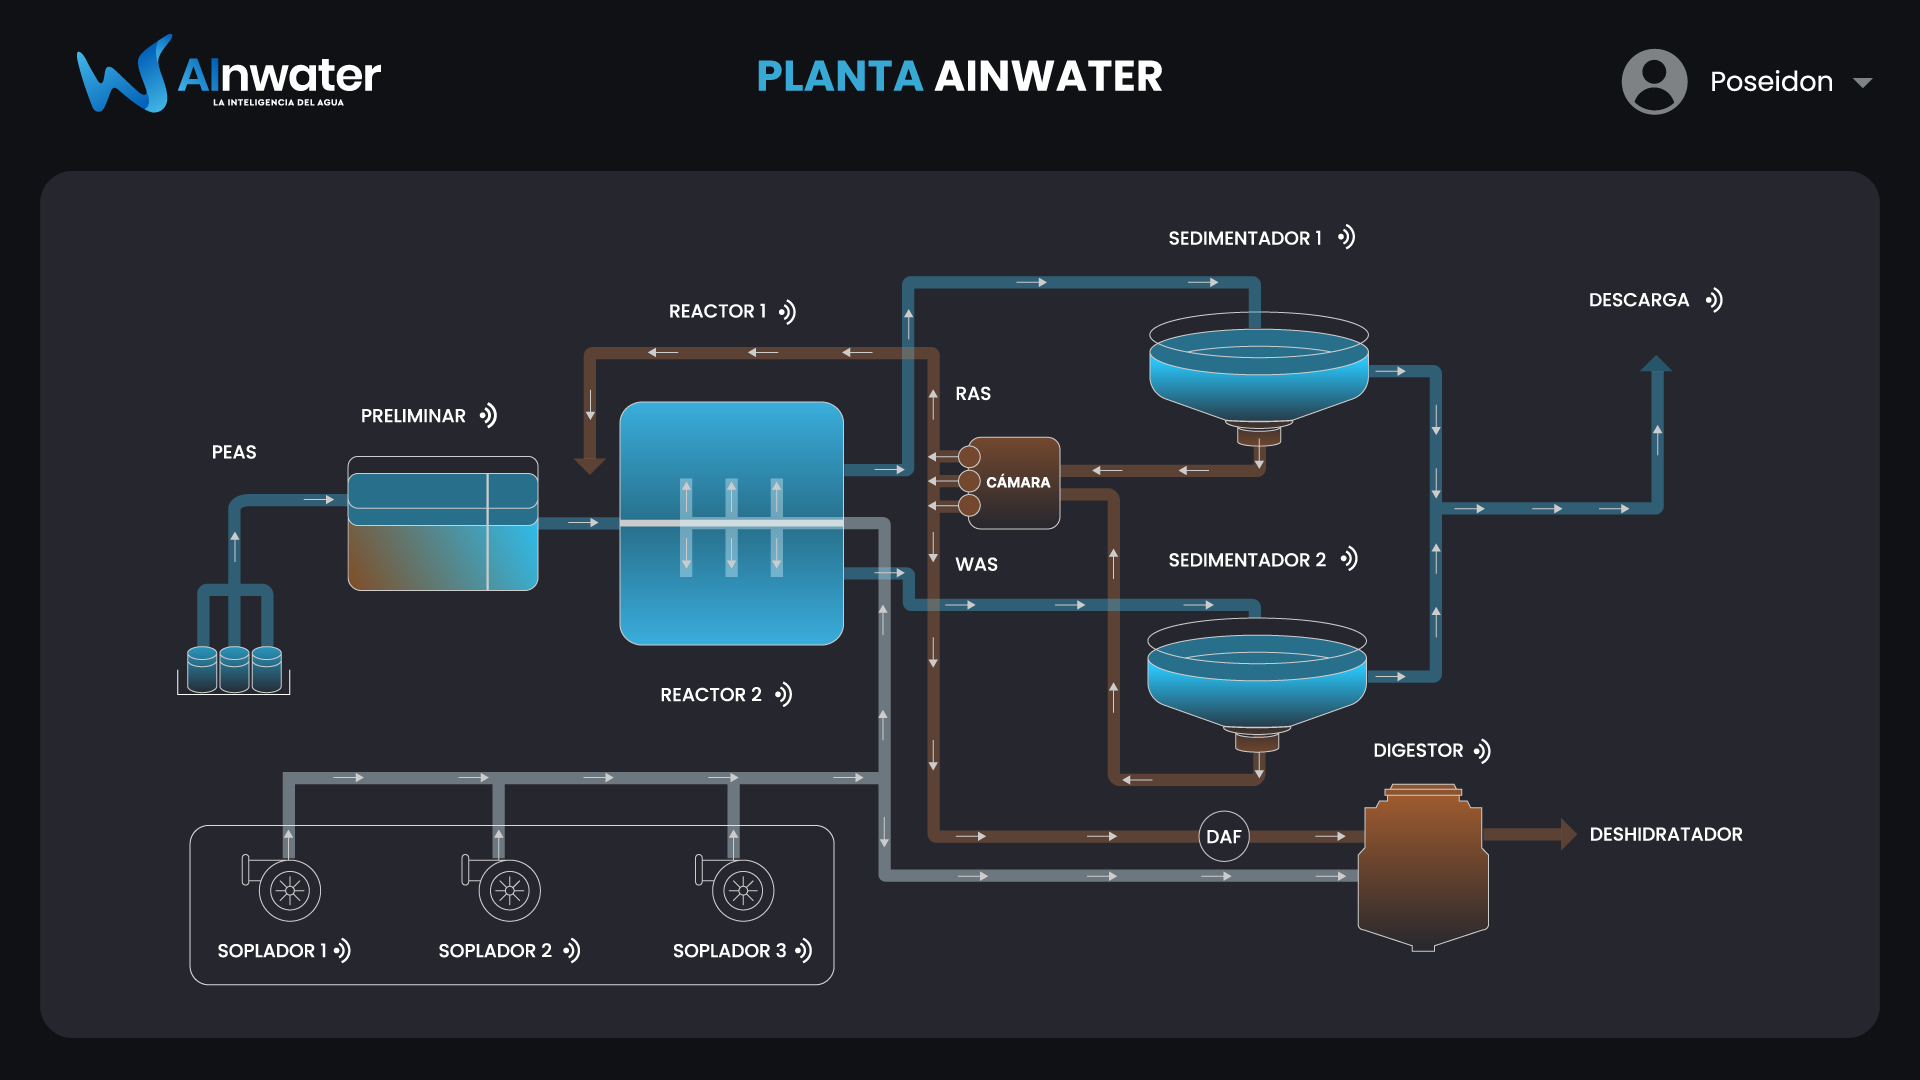 Noticia: Inteligencia artificial permite ahorrar hasta 30% de energía en plantas de tratamiento de agua